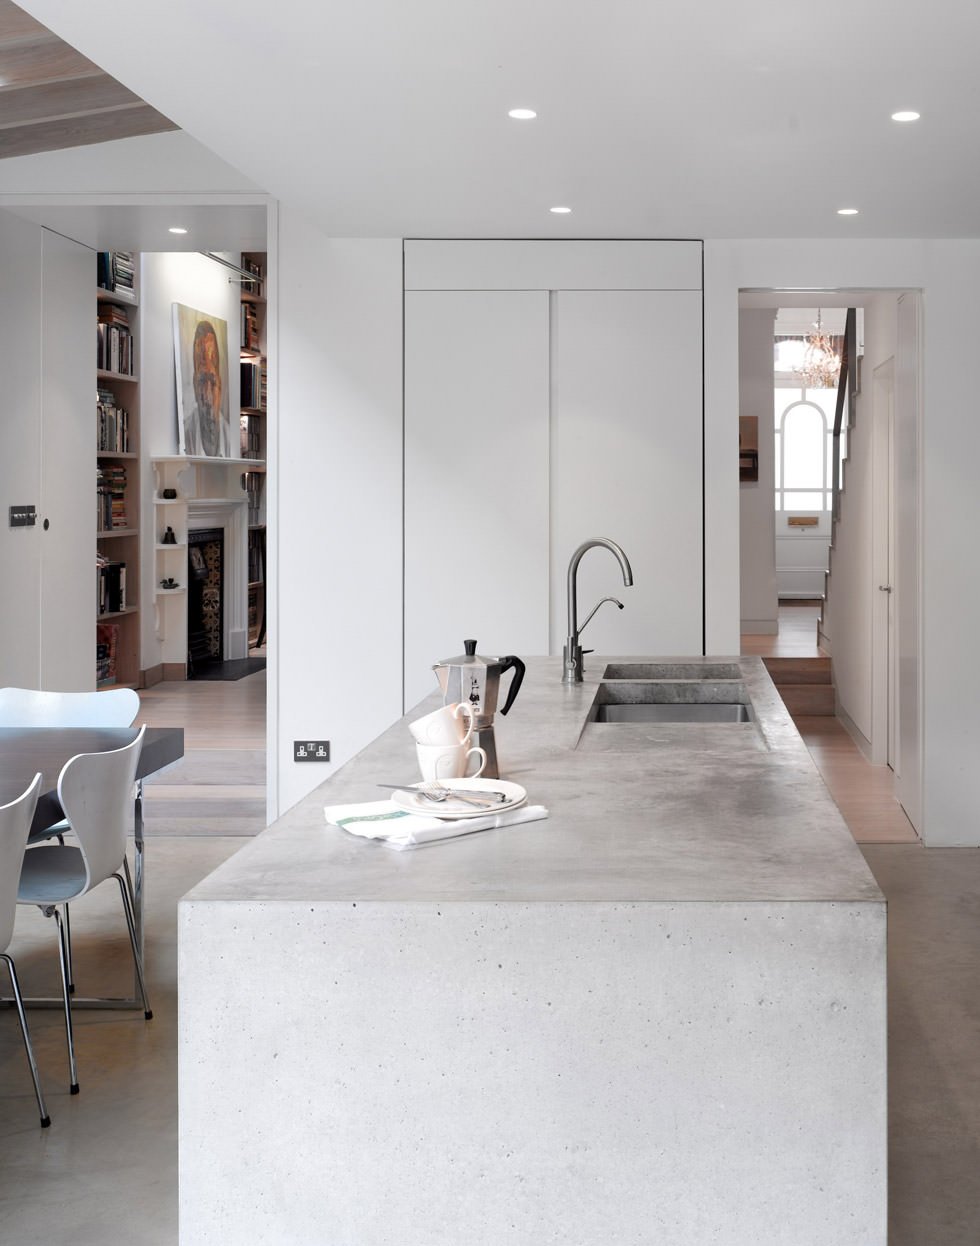 Isola cucina in cemento, stile maschile, moderno e lineare